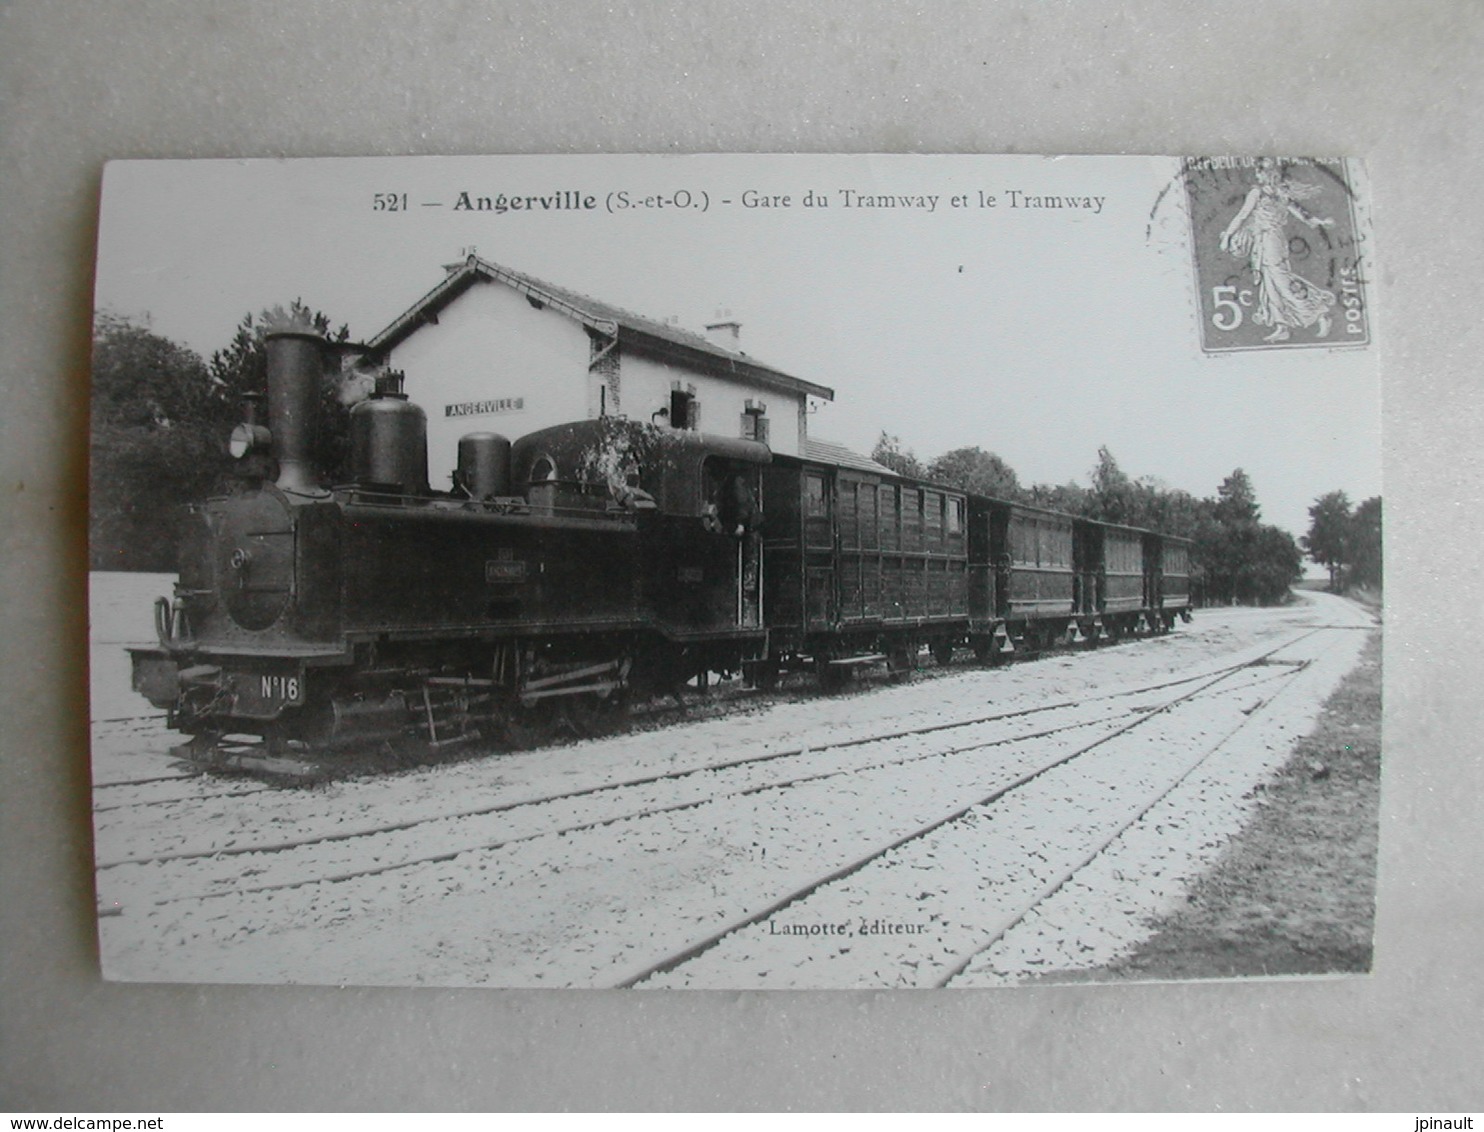 PHOTO Repro De CPA (J.H. Renaud) - Train - Angerville - Gare Du Tramway Et Le Tramway - Trains